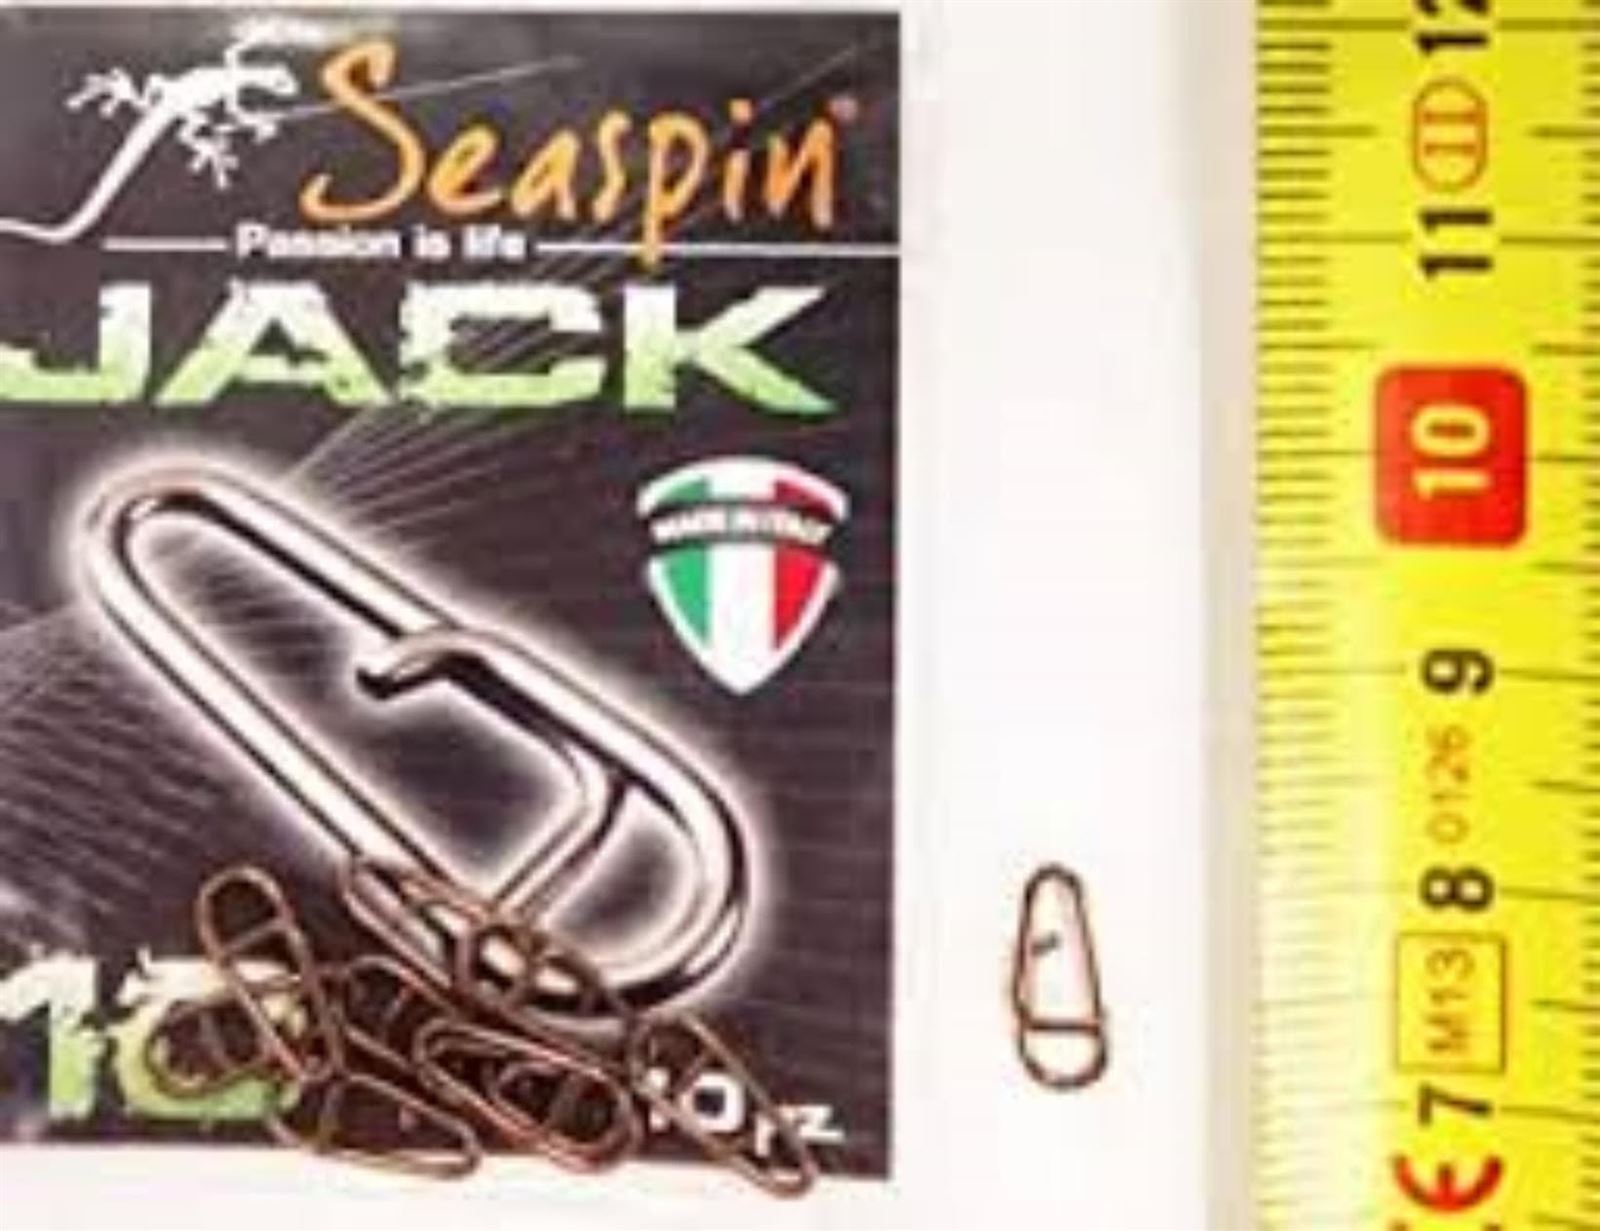 SEASPIN Jack Fast Links Conectores para señuelos - Imagen 2